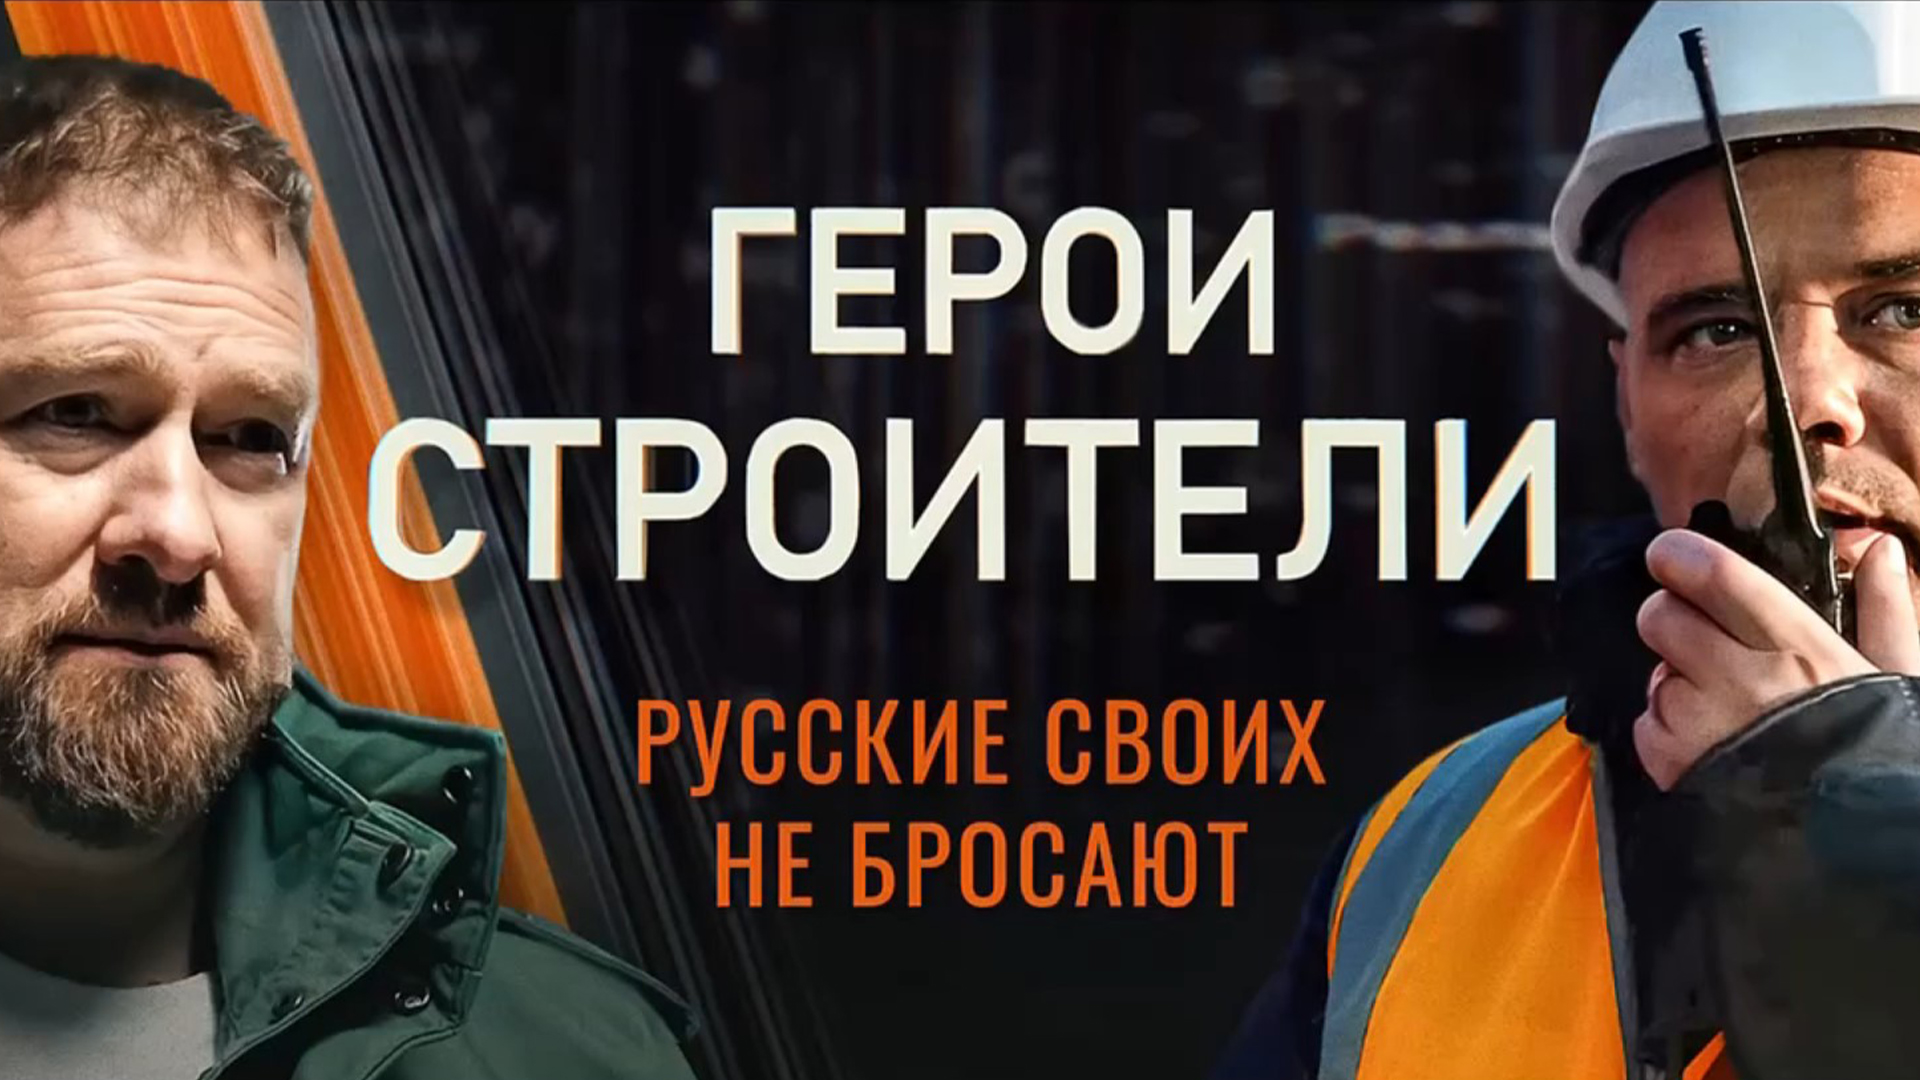 «Герои-строители». Первый выпуск: «Строители для строителей» на луганской земле